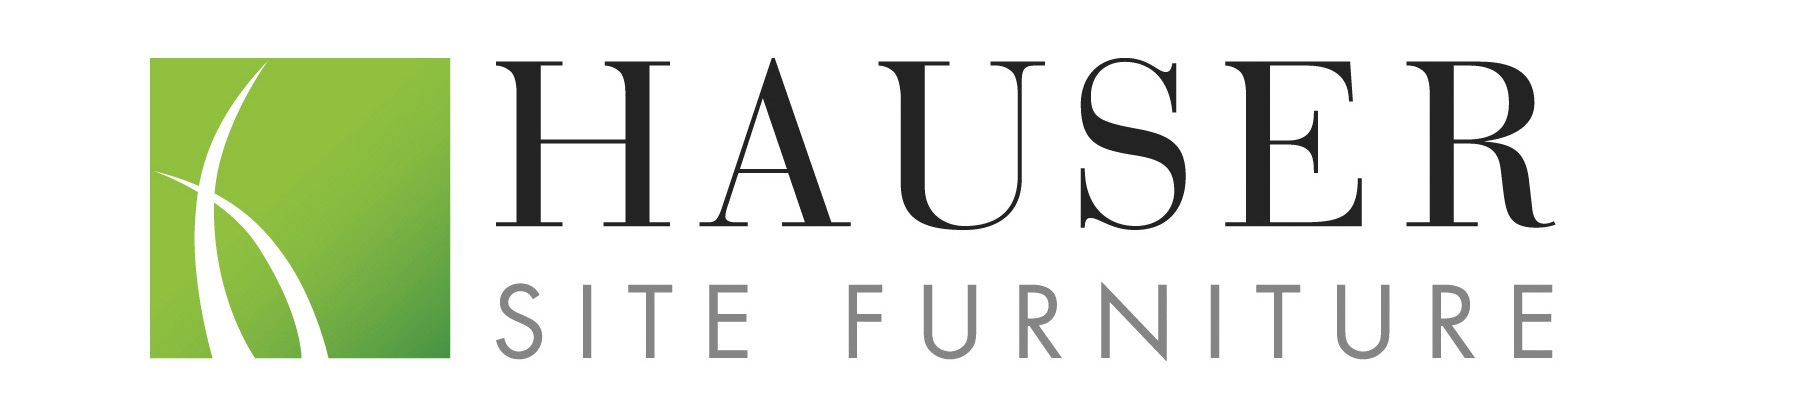 Hauser furniture logo